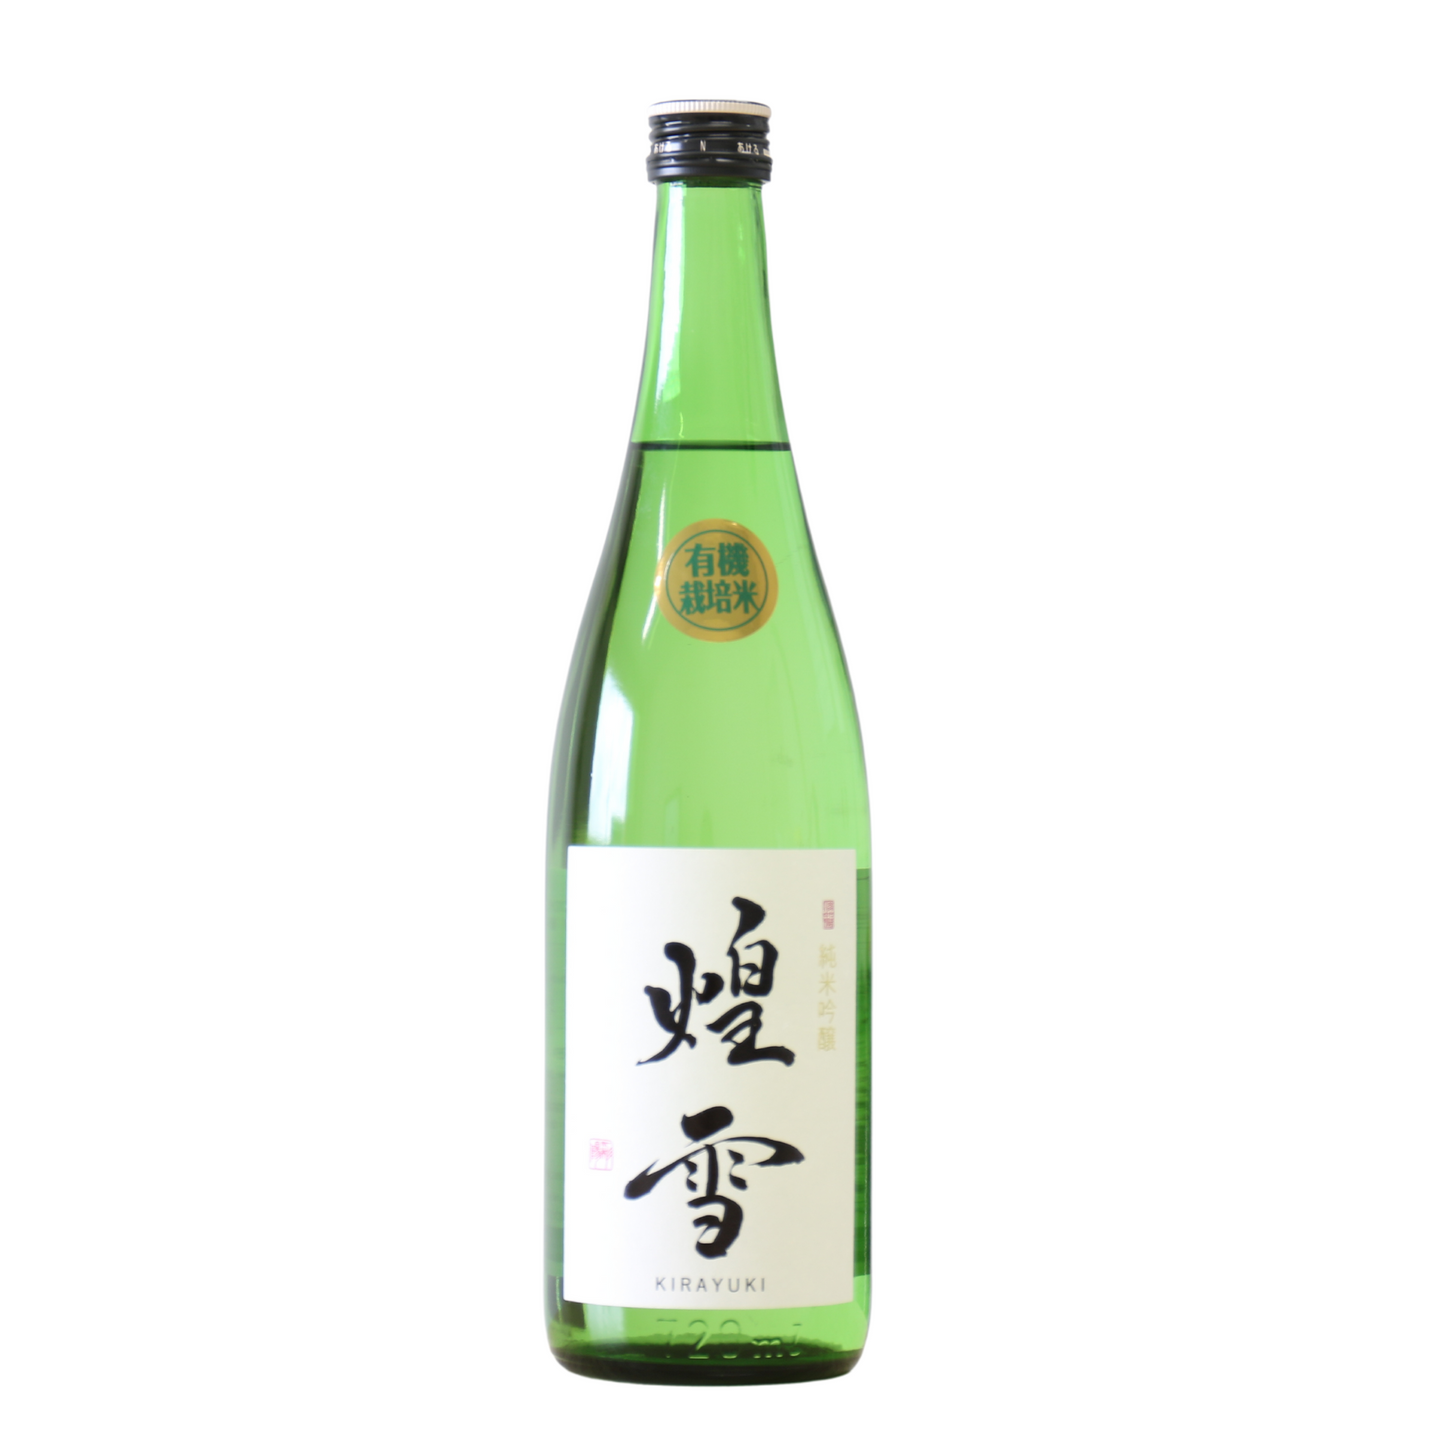 Organic Sake KIRAYUKI 煌雪 Junmai Ginjyo 720ml Tochigi Sagara fruity aromatic